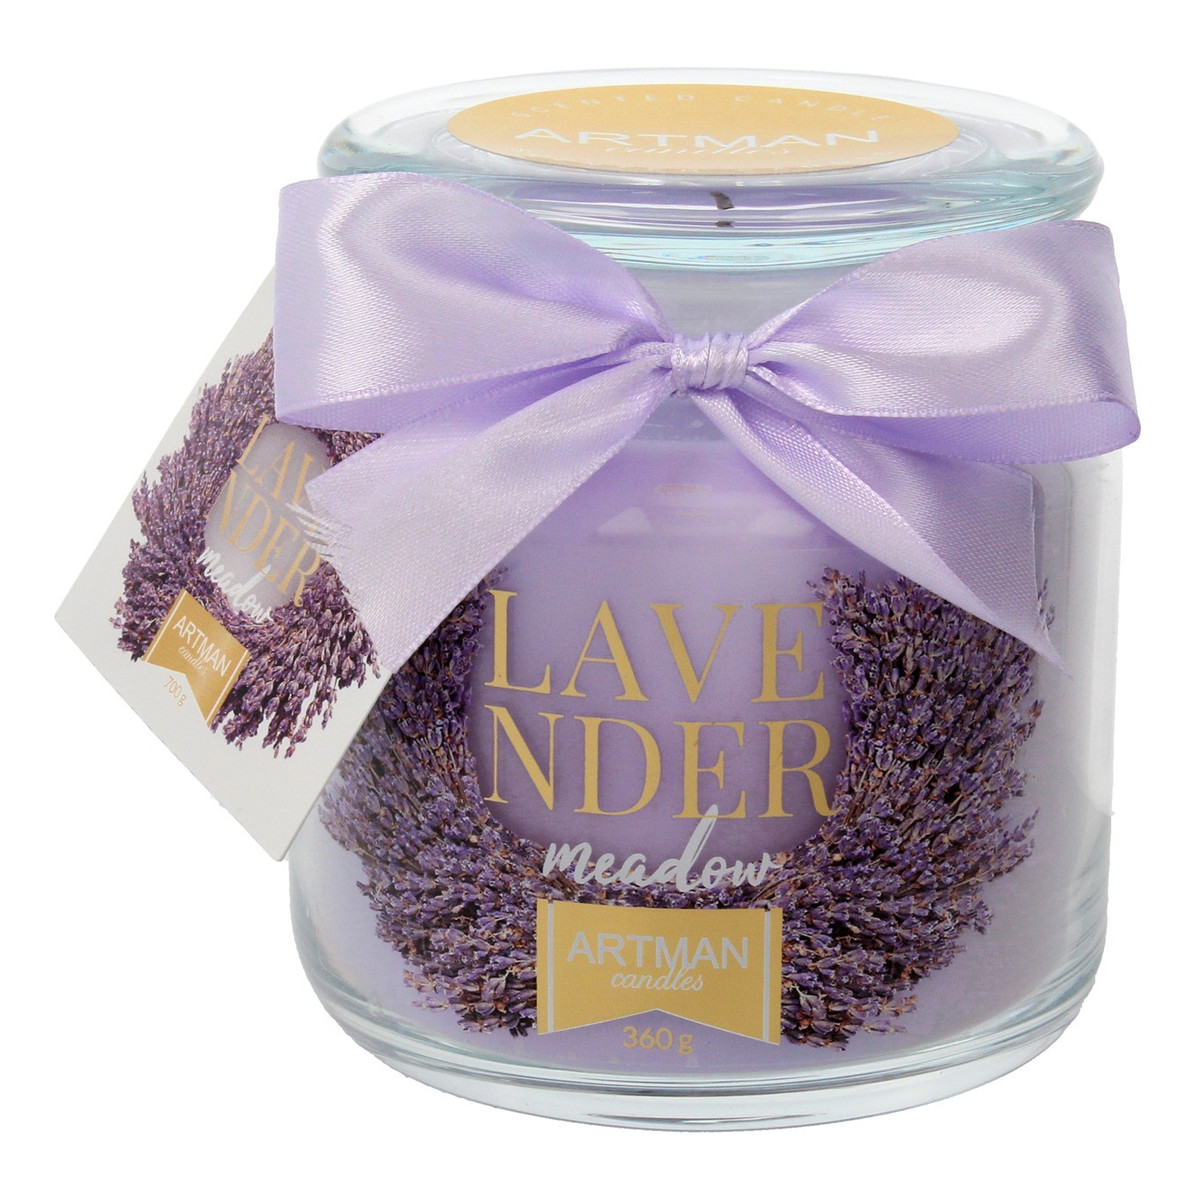 Artman Candles Lavender Meadow Świeca zapachowa słoik mały 1szt- 360g